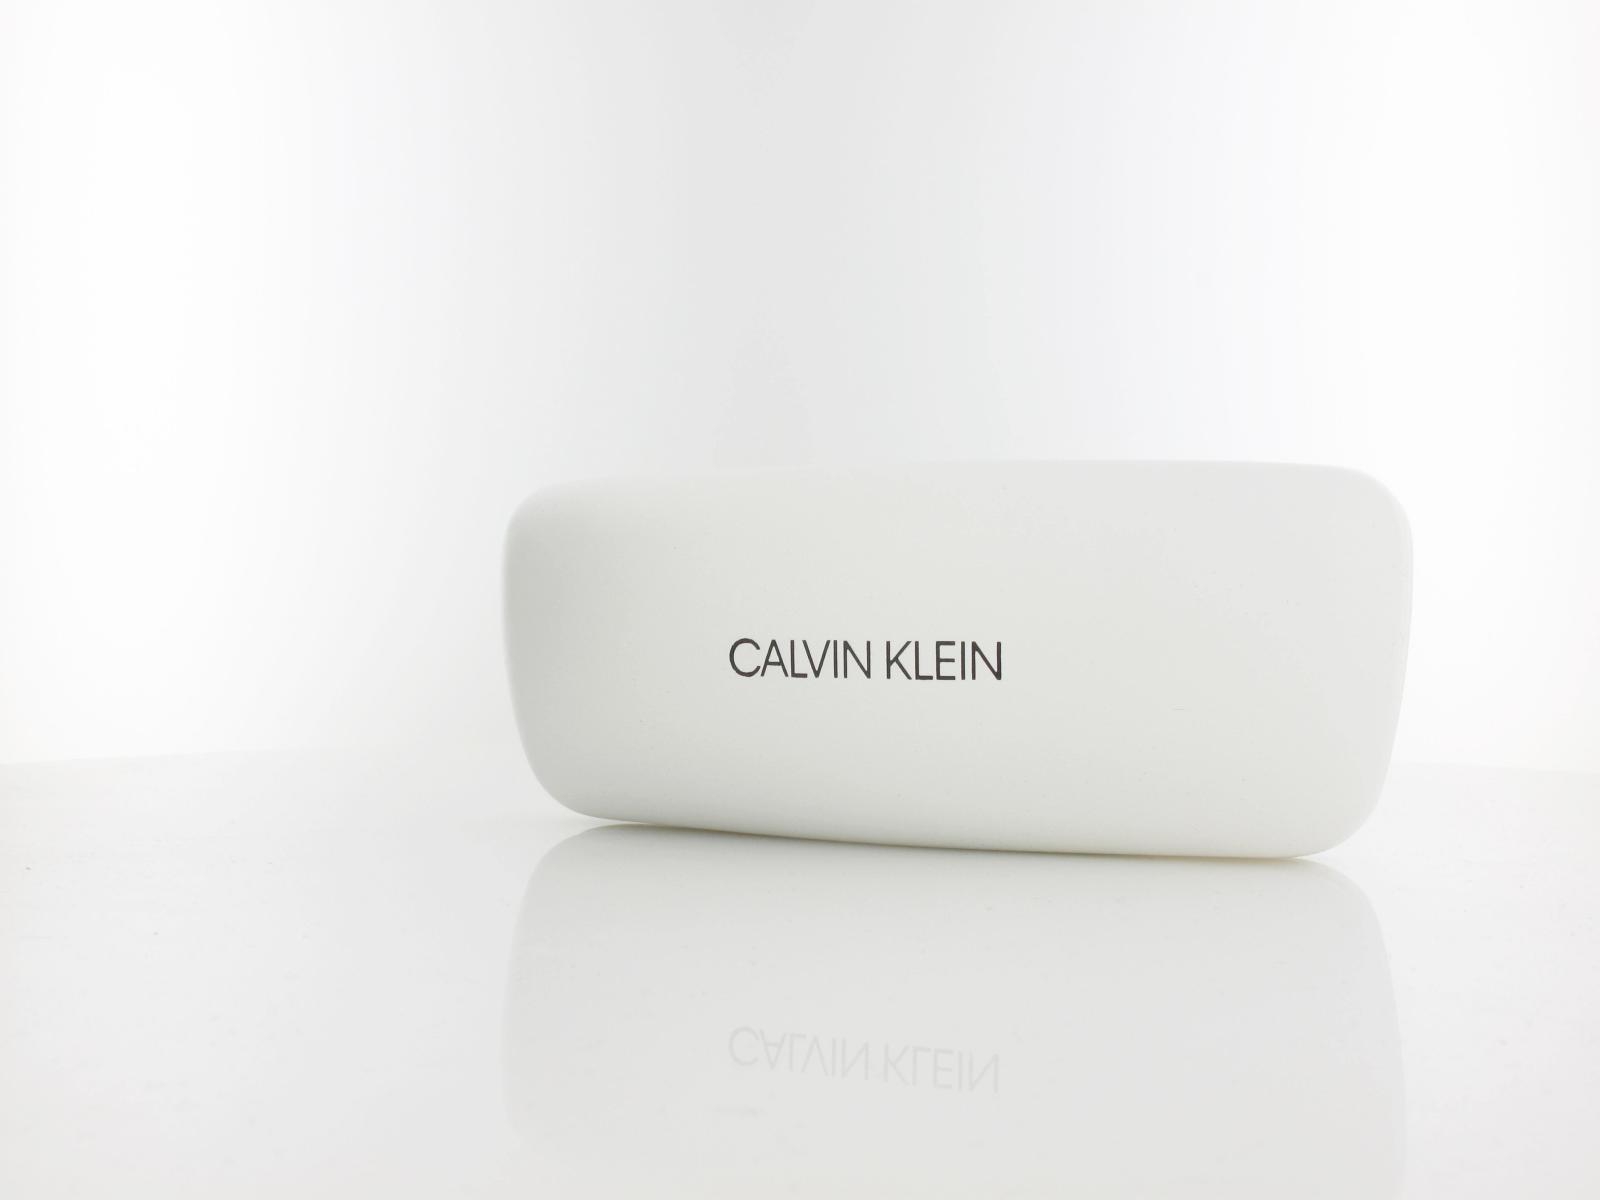 Calvin Klein | CK23549 205 50 | brown pink rose